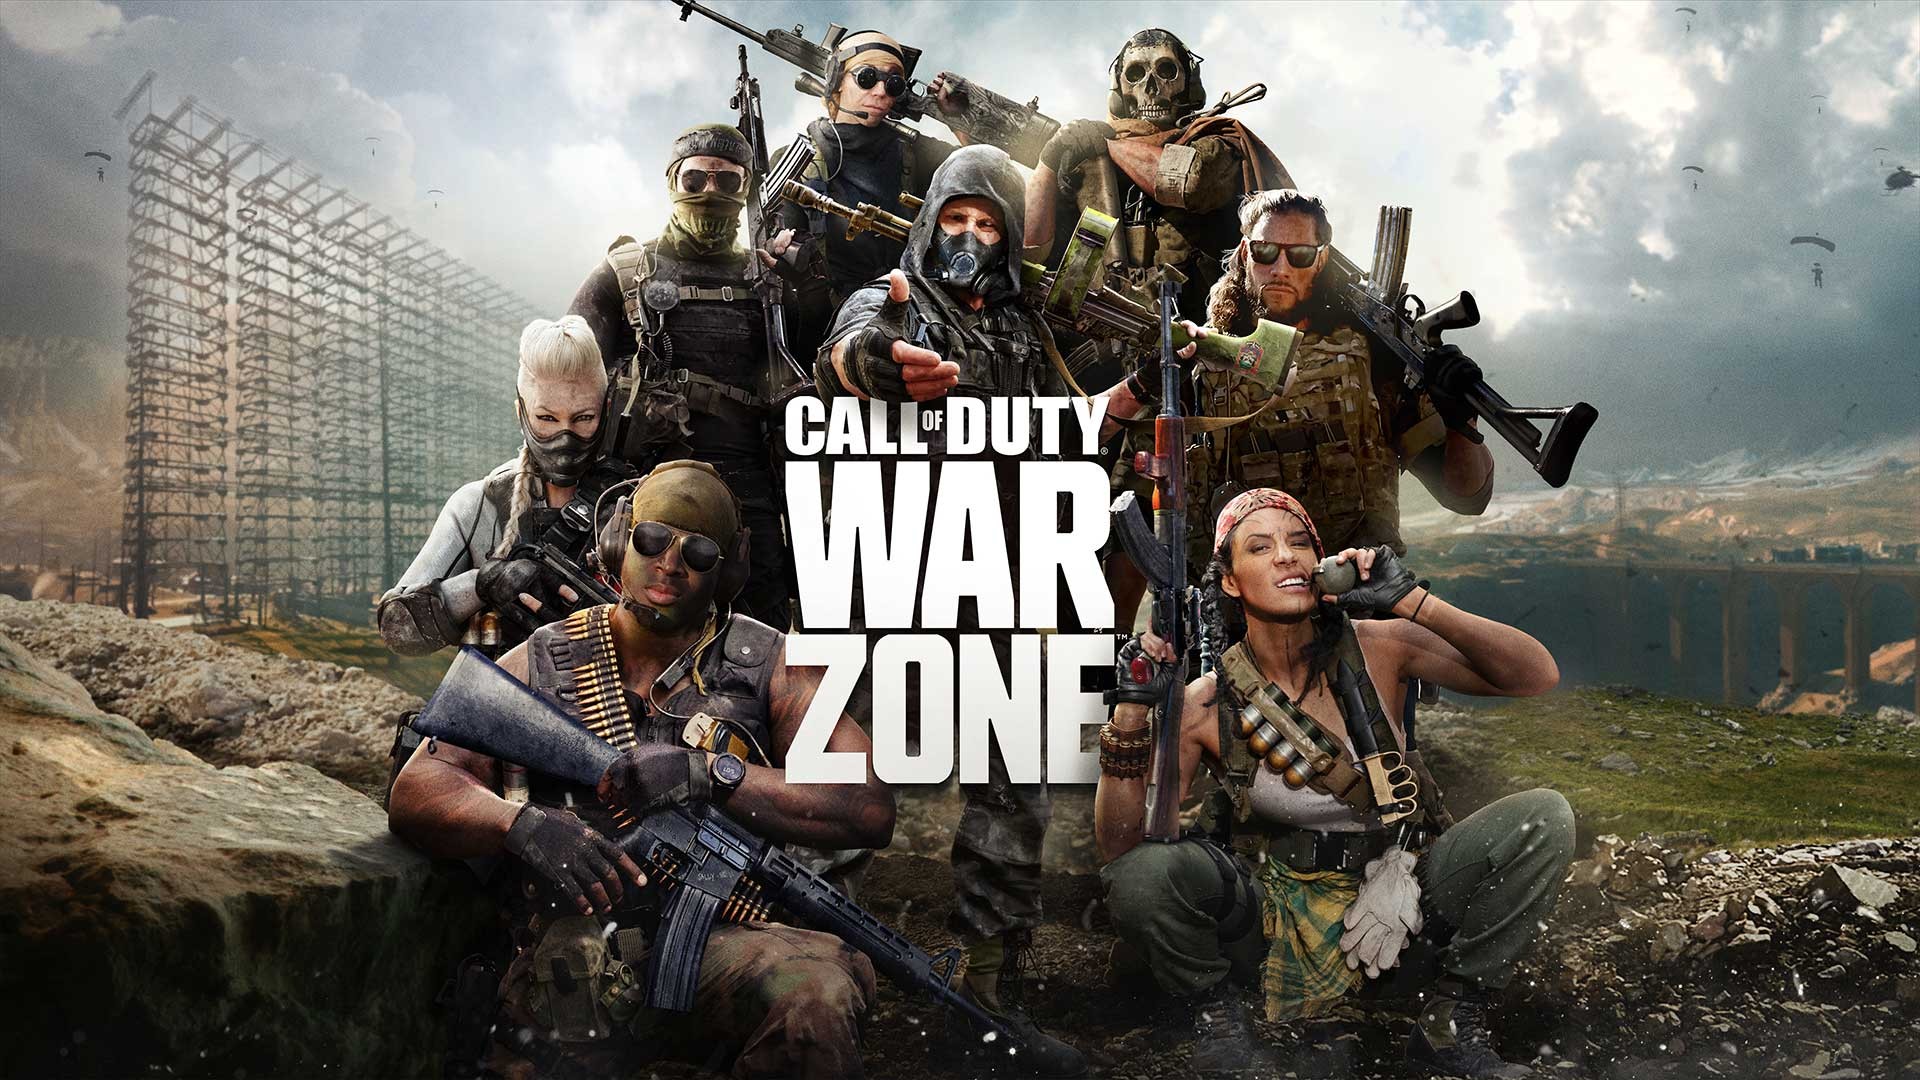 Call Of Duty Warzone Est Haciendo Cambios Masivos En La Pr Xima Secuela Juegos News